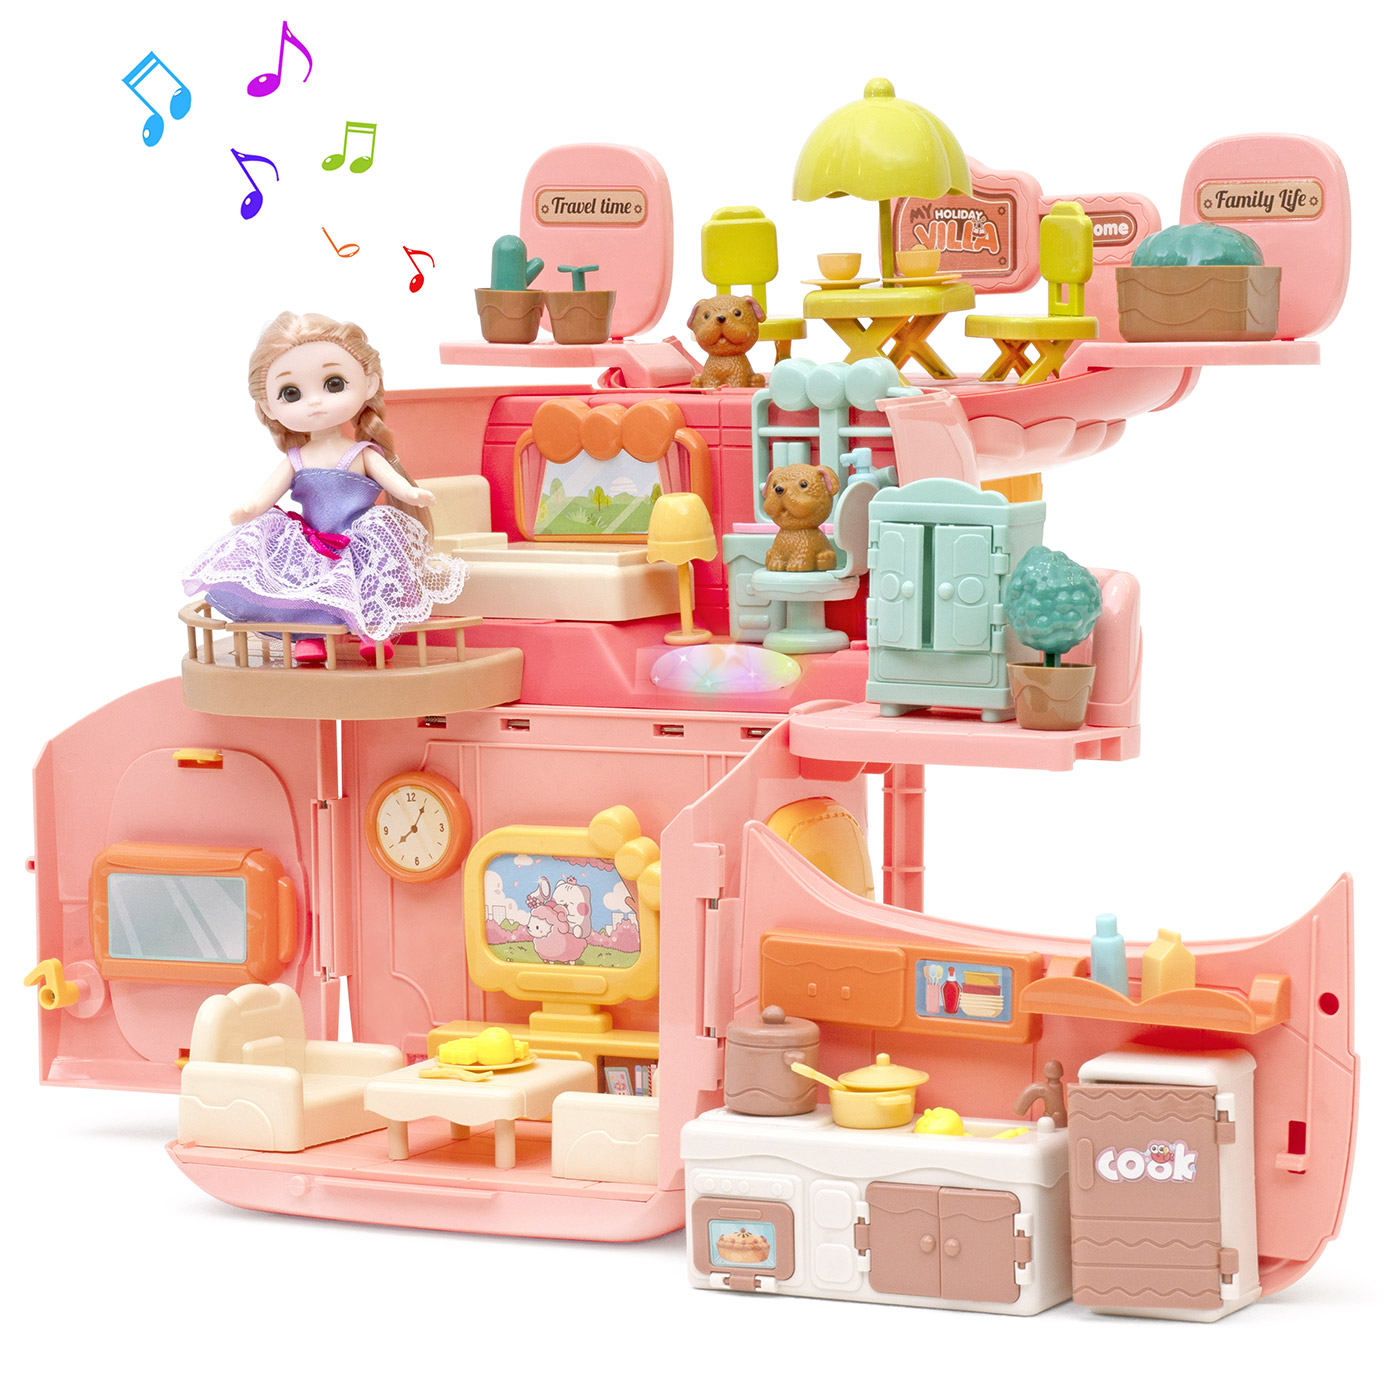 Игровой набор с куклами Funkids Домик Мечты кукольный домик с мебелью арт. CC6673 игровой набор кукла barbie extra gyj78 в радужном платье и машина мечты barbie extra hdj47